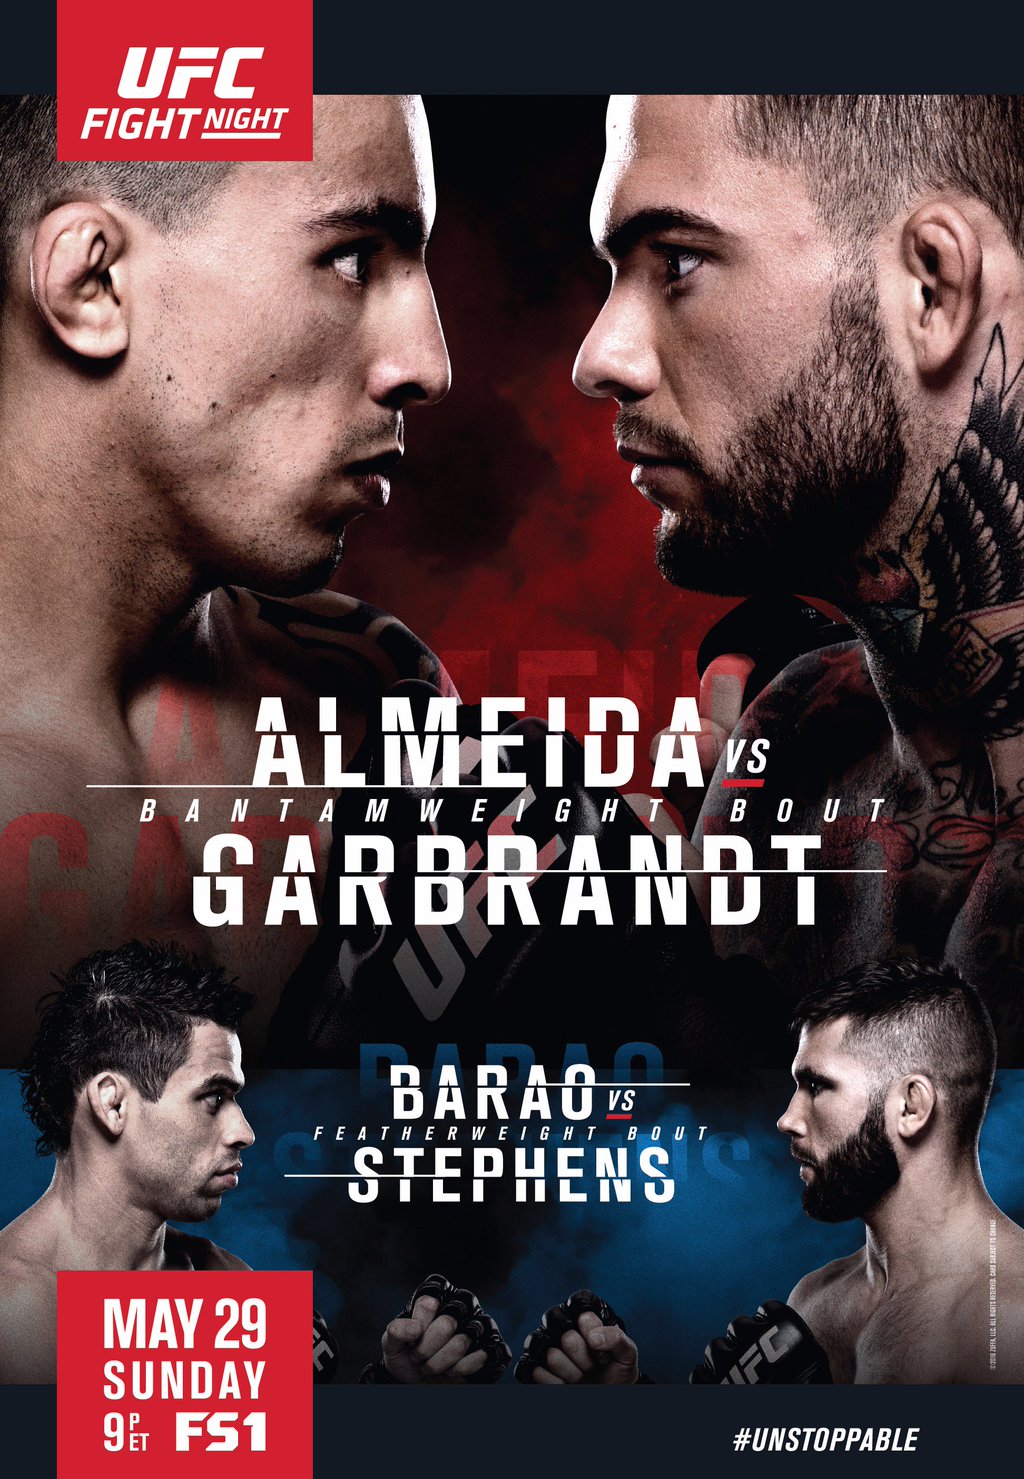 UFC Fight Night 88 - Almeida vs. Garbrandt Fight Card Results1024 x 1479